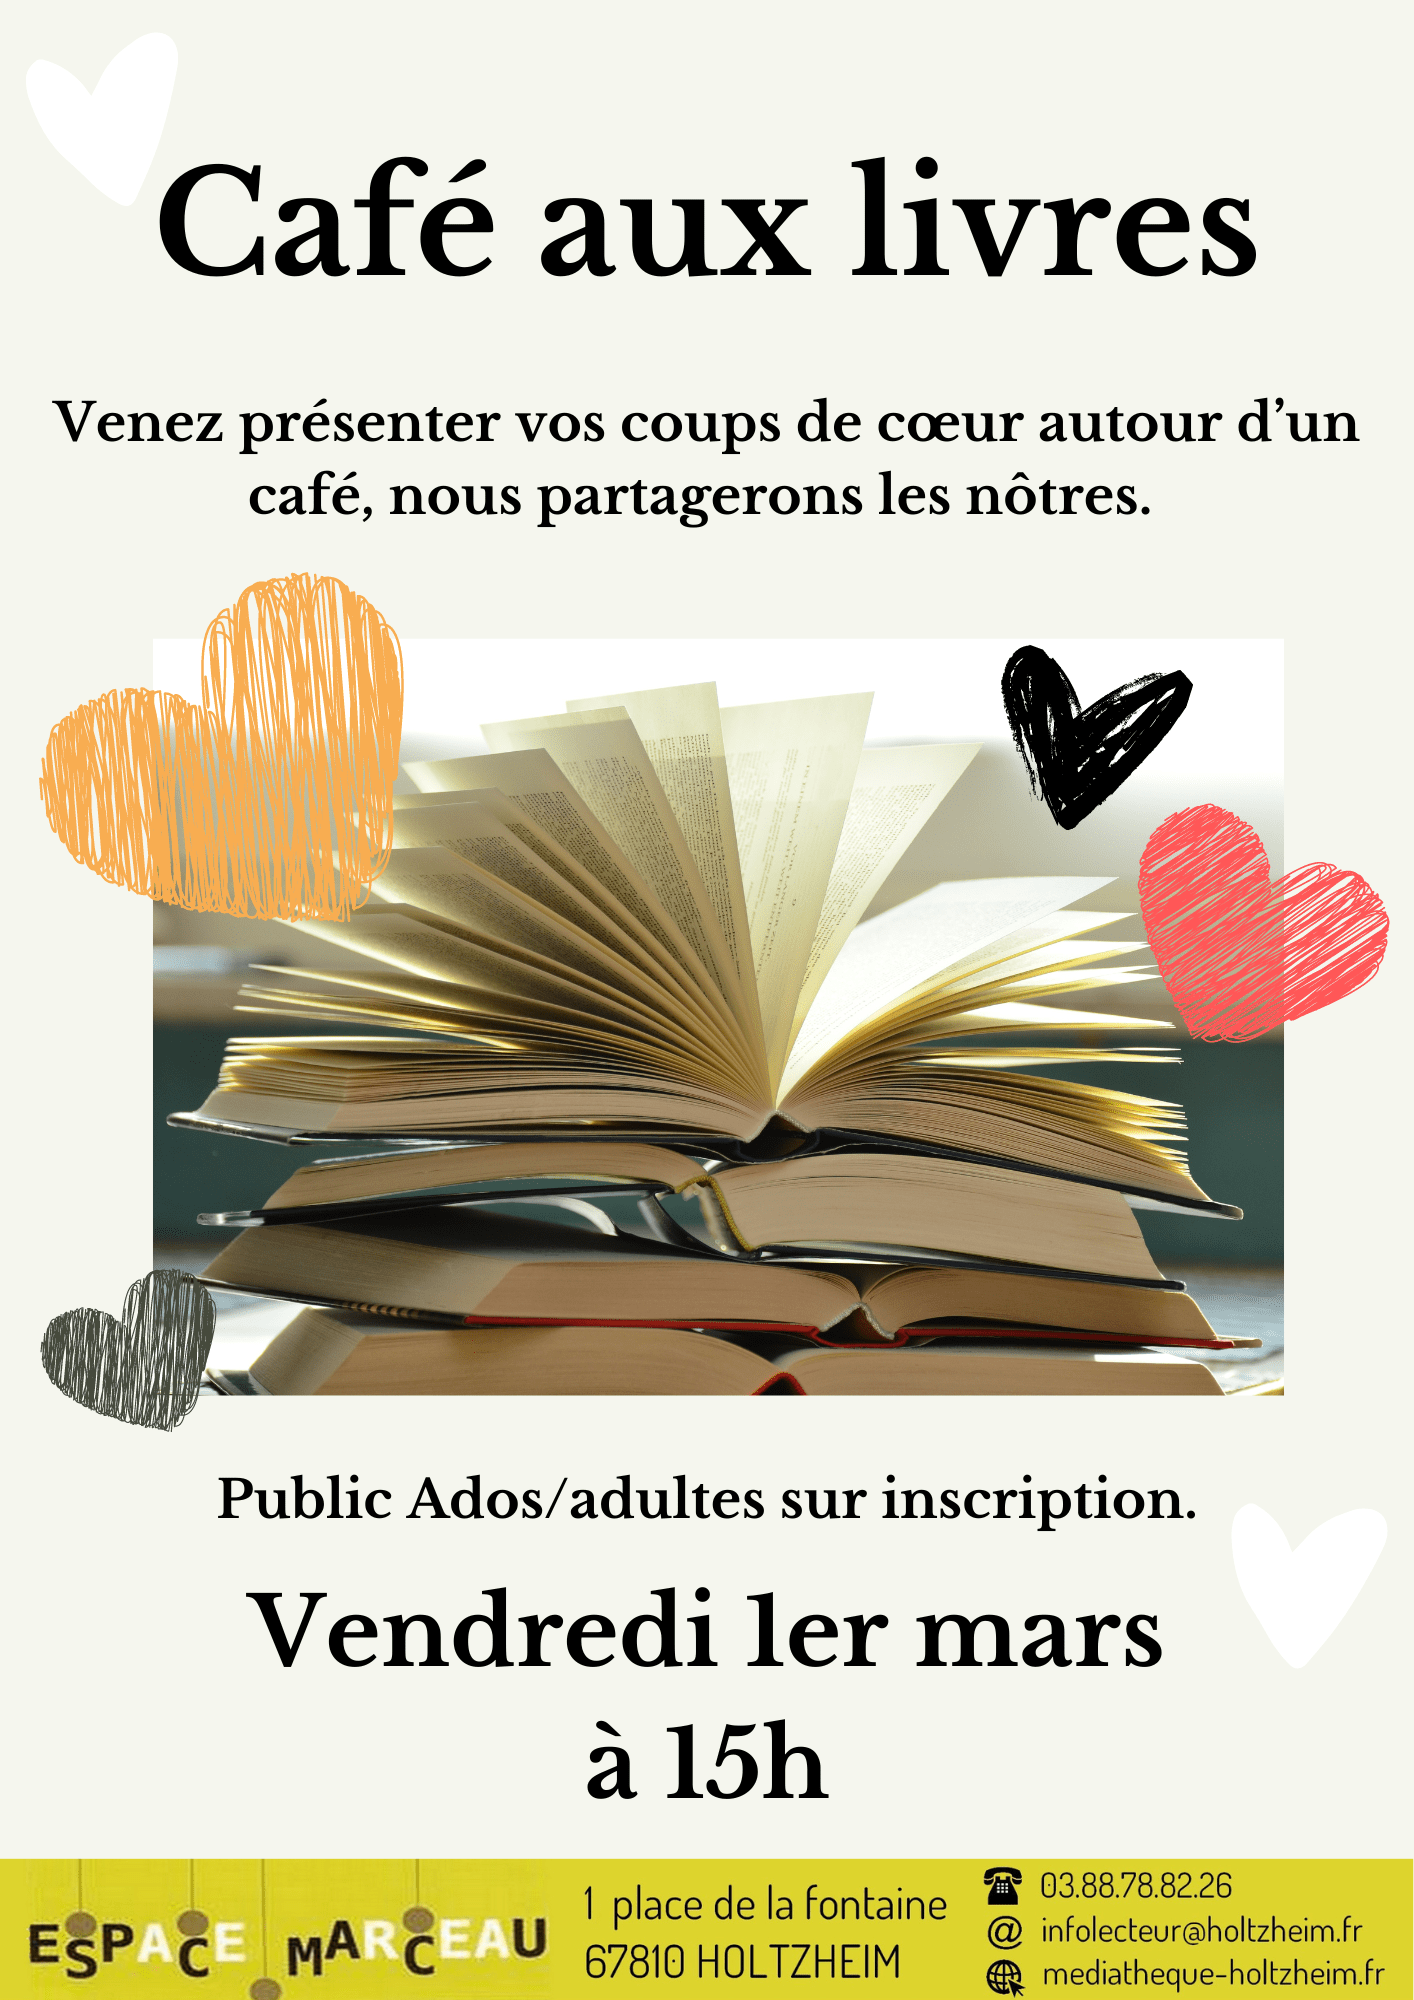 Affiche reprenant les informations du Café aux livres, avec une illustration de livre ouvert et des cœurs rouge, orange, gros et noir.